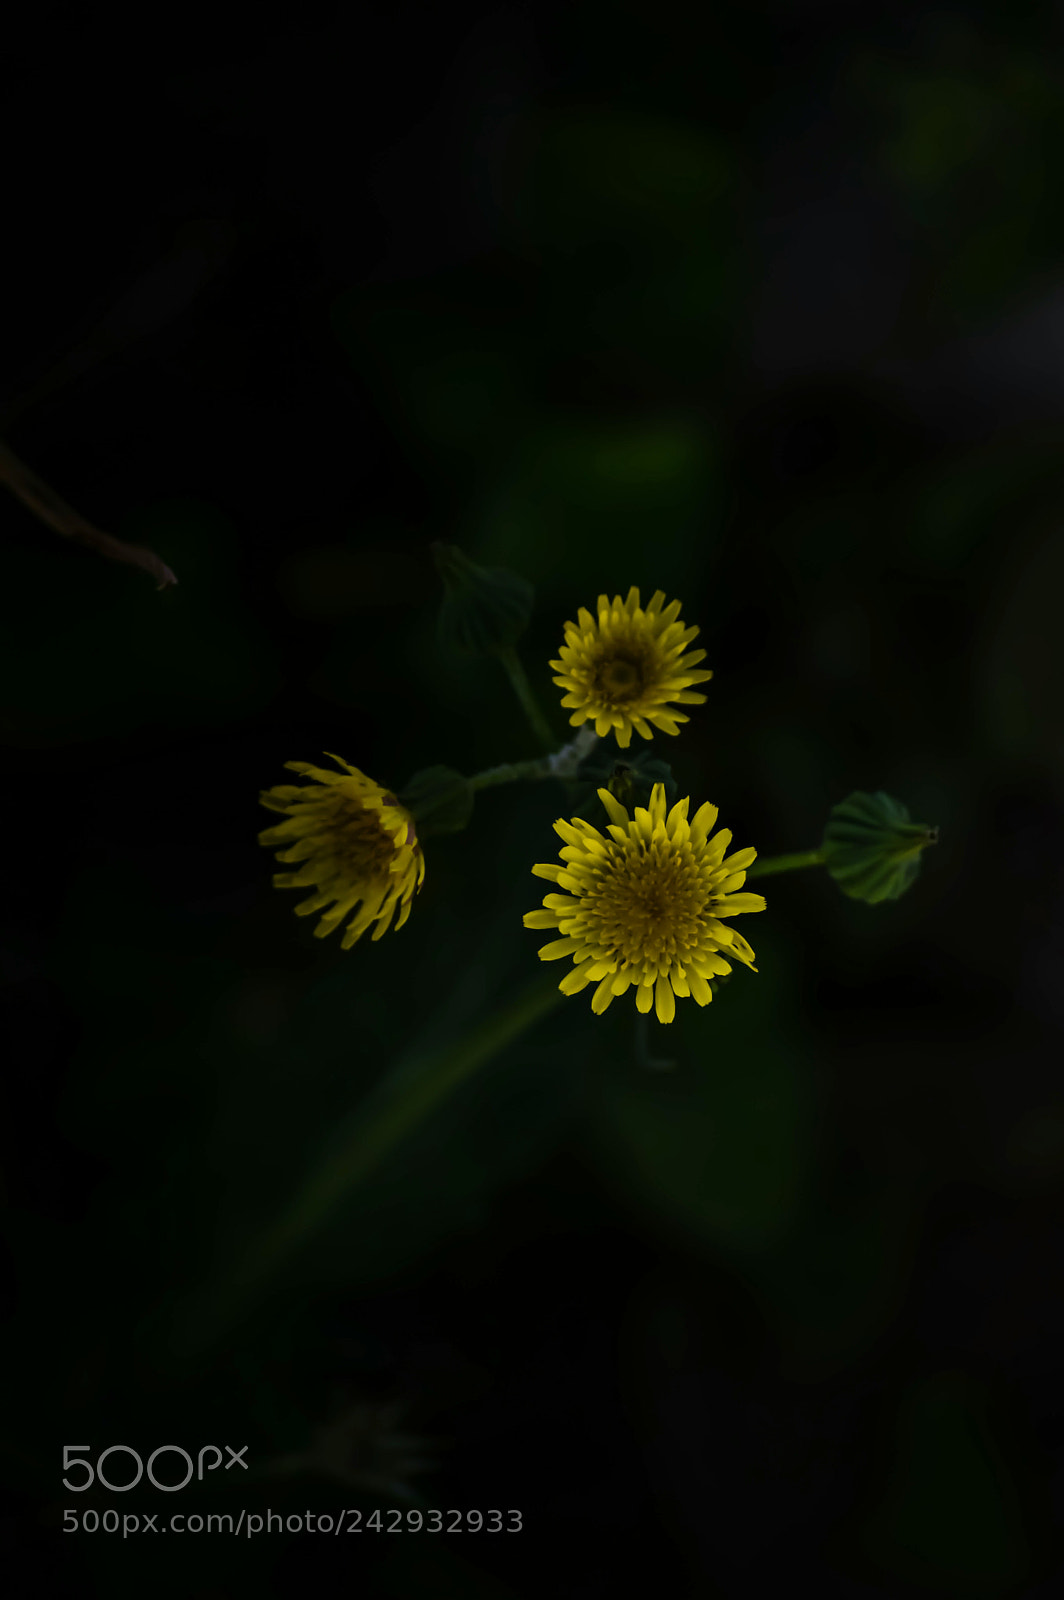 Nikon D3200 sample photo. Flora photography